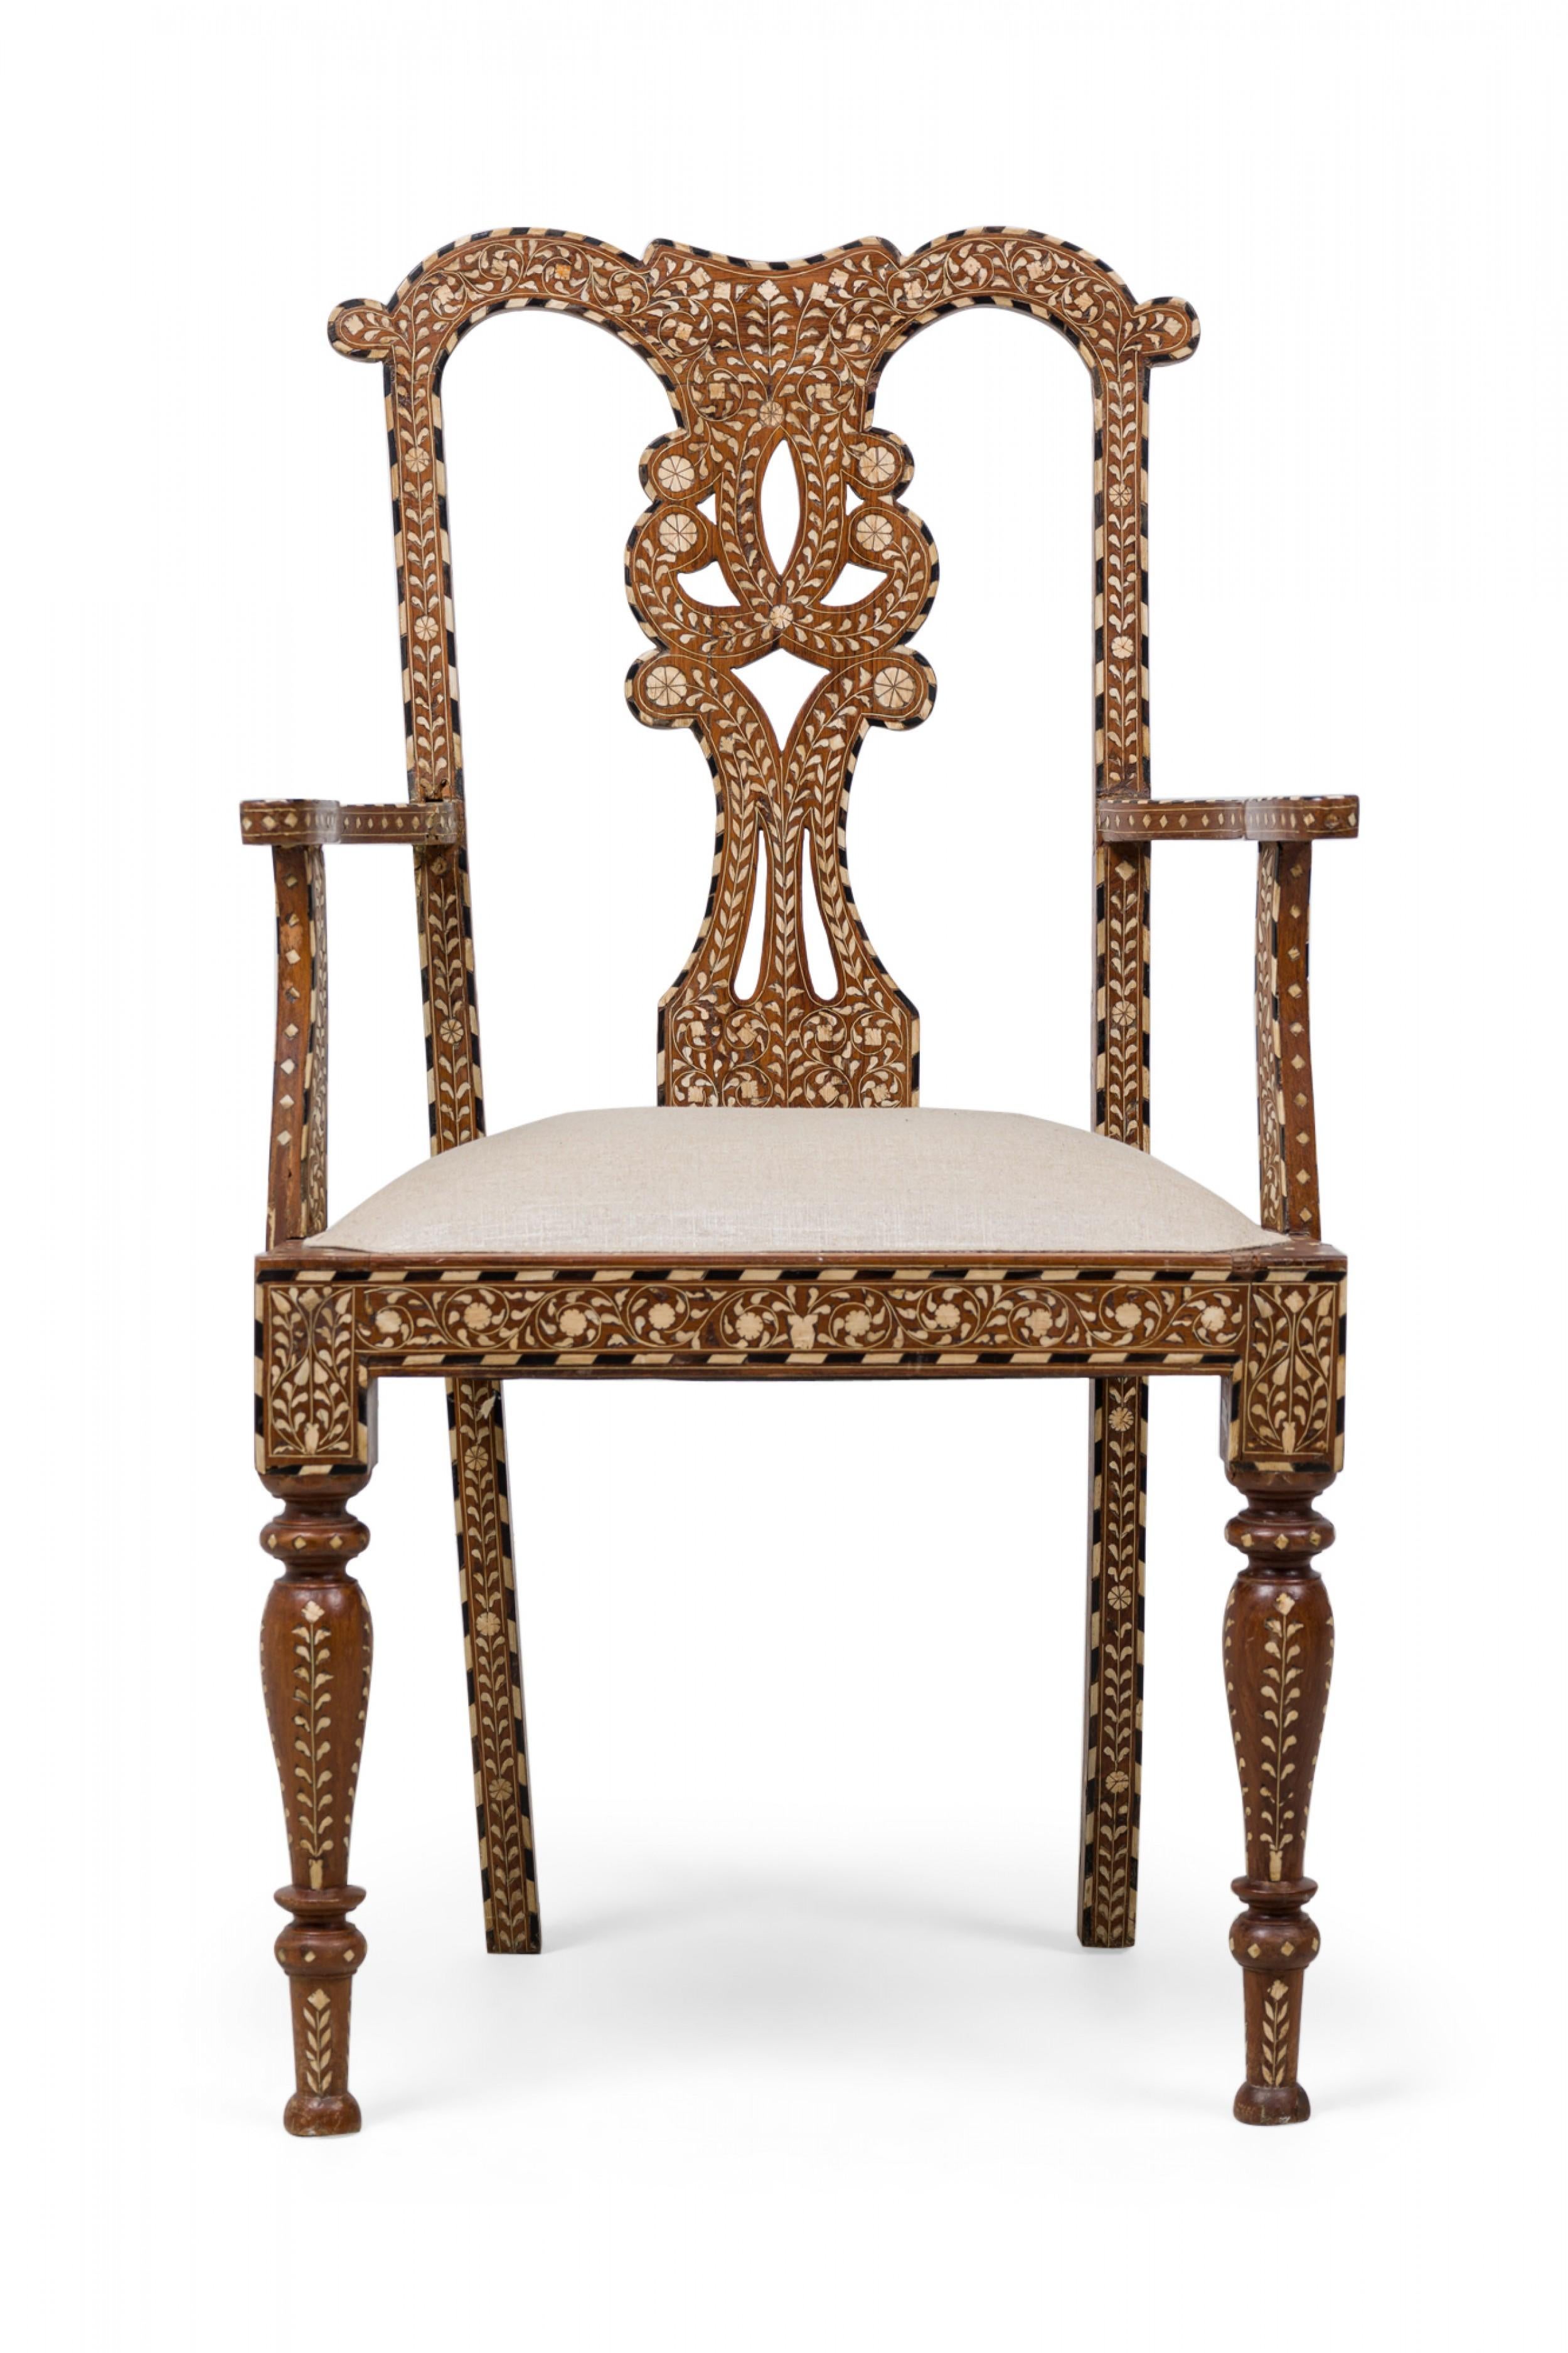 ENSEMBLE DE 4 fauteuils anglo-indiens (19e siècle) en bois dur sculpté, avec un dossier ajouré en forme de volute, un motif incrusté de volutes et de feuillages entre des bordures rayées, un siège rembourré beige, des pieds avant tournés et des